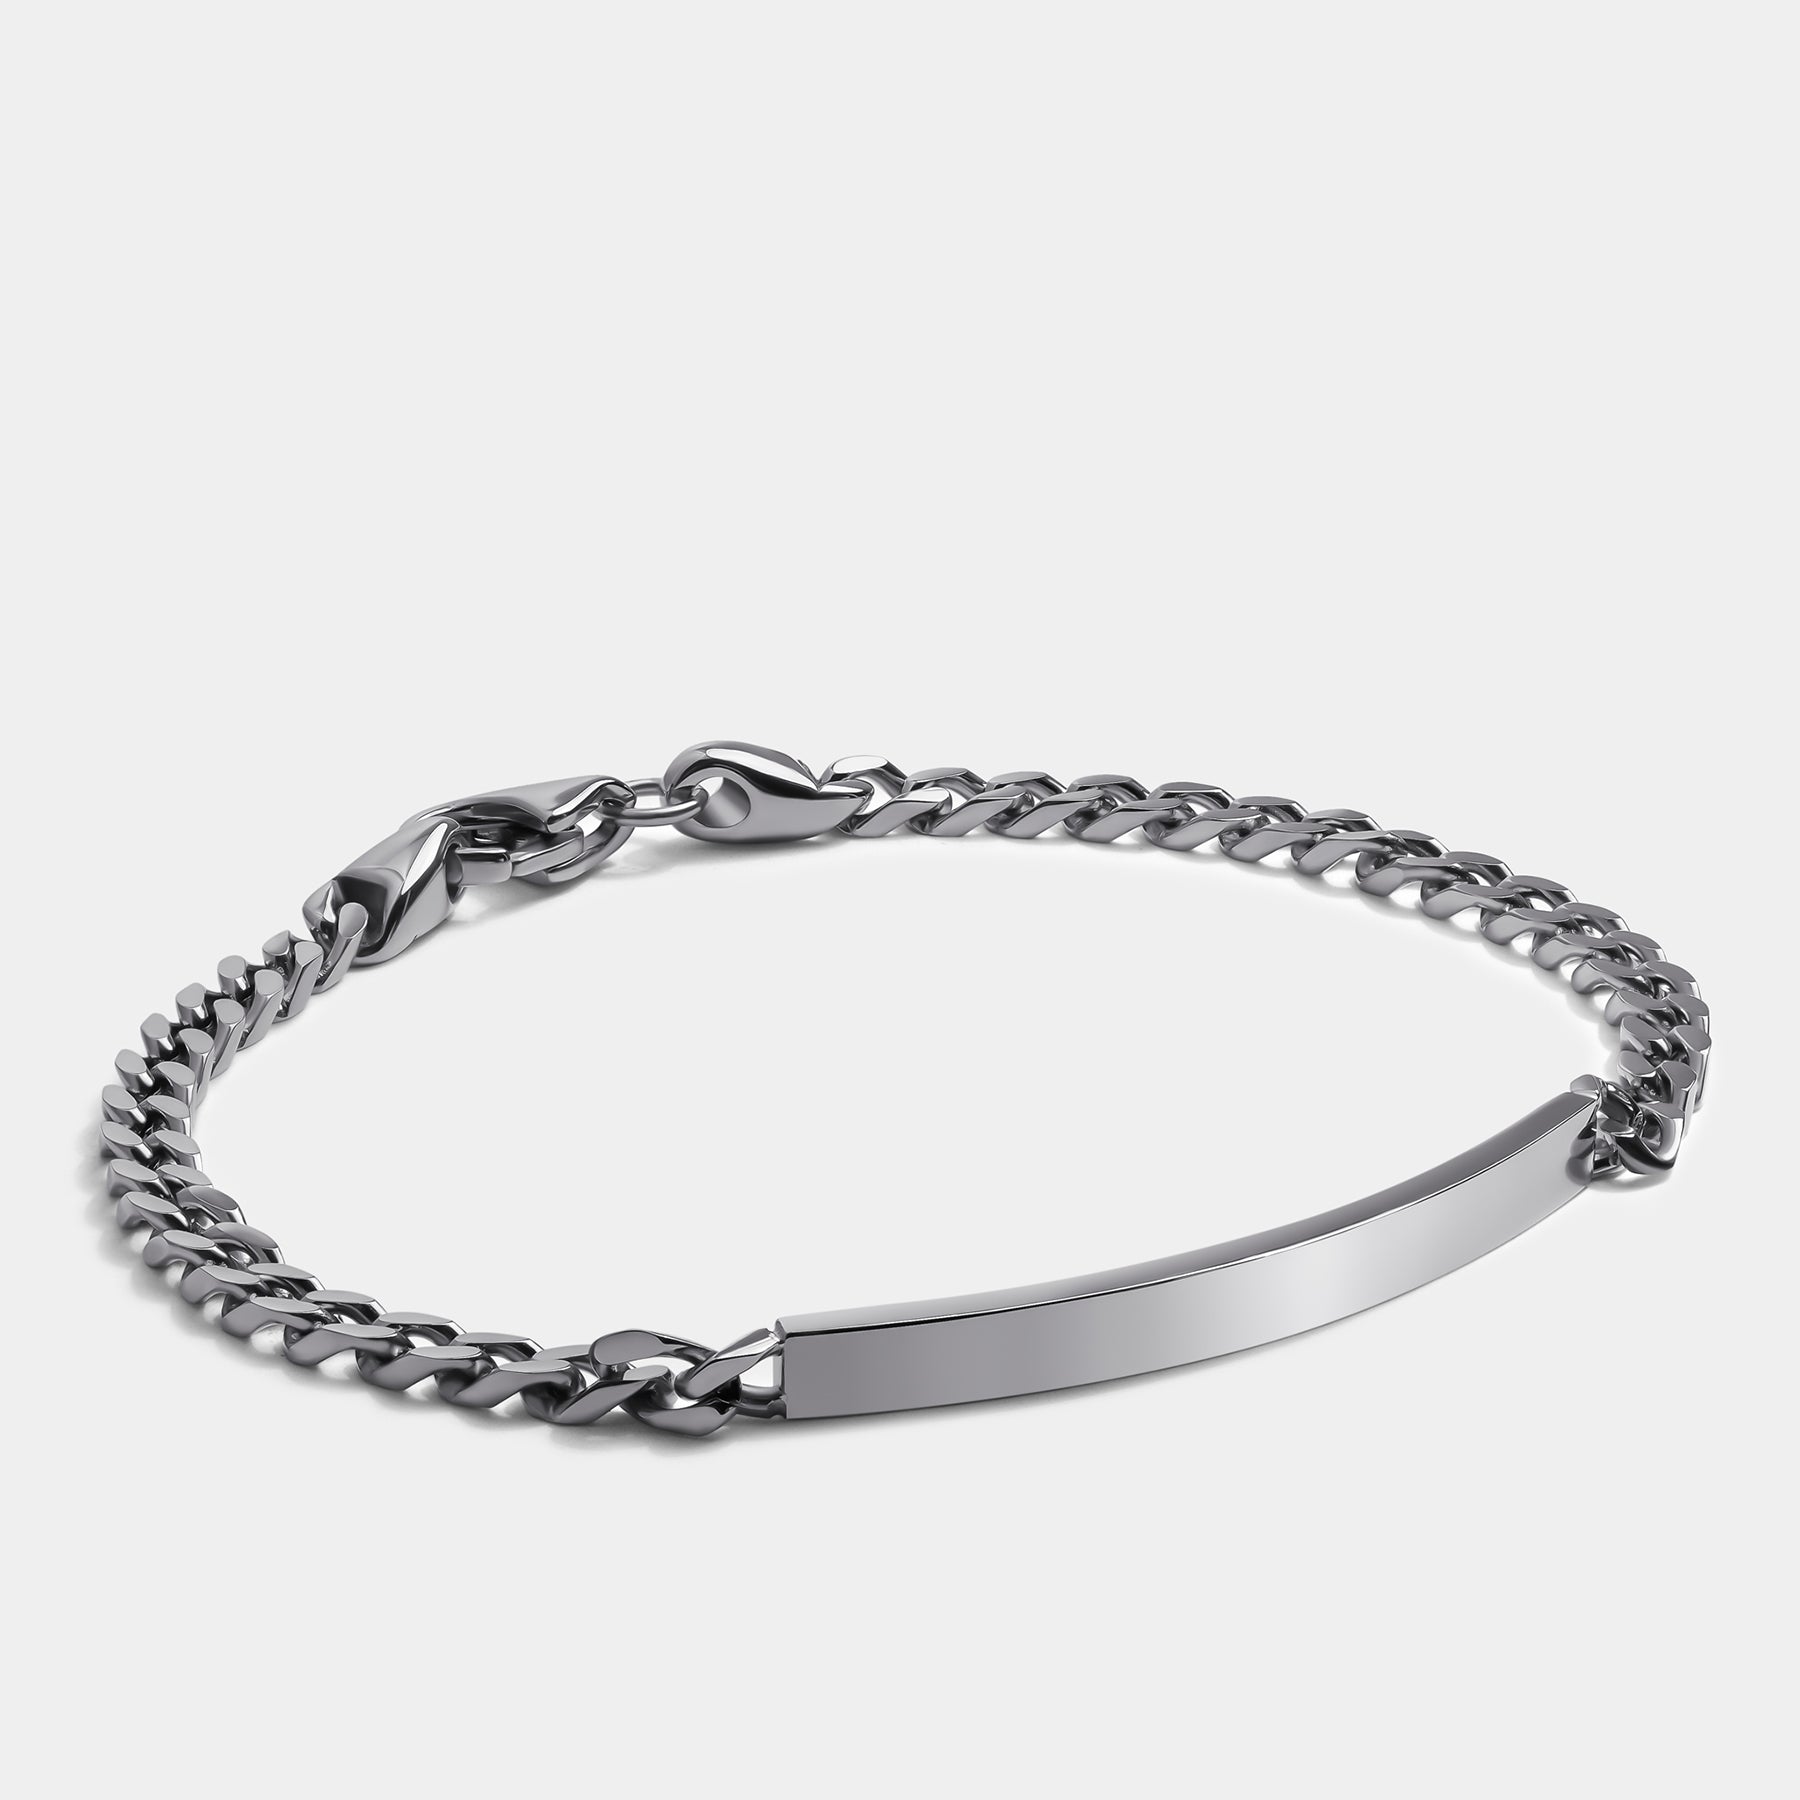 Identico Chain Silver - Elegatto